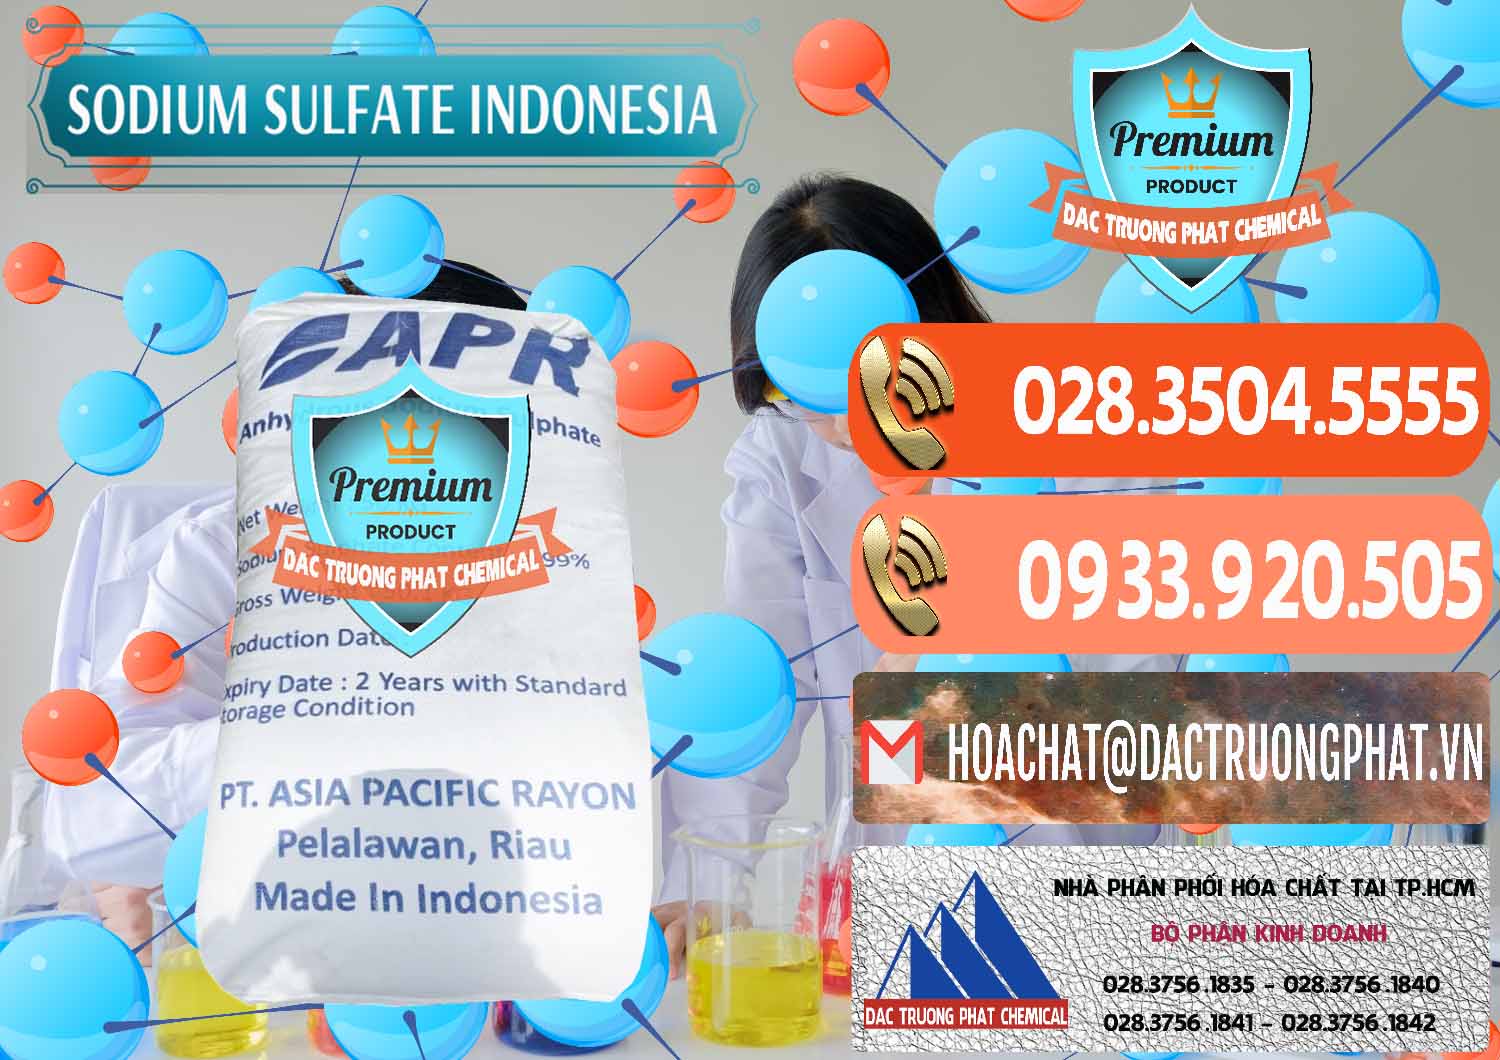 Chuyên cung cấp _ bán Sodium Sulphate - Muối Sunfat Na2SO4 APR Indonesia - 0460 - Đơn vị chuyên kinh doanh _ phân phối hóa chất tại TP.HCM - hoachatmientay.com